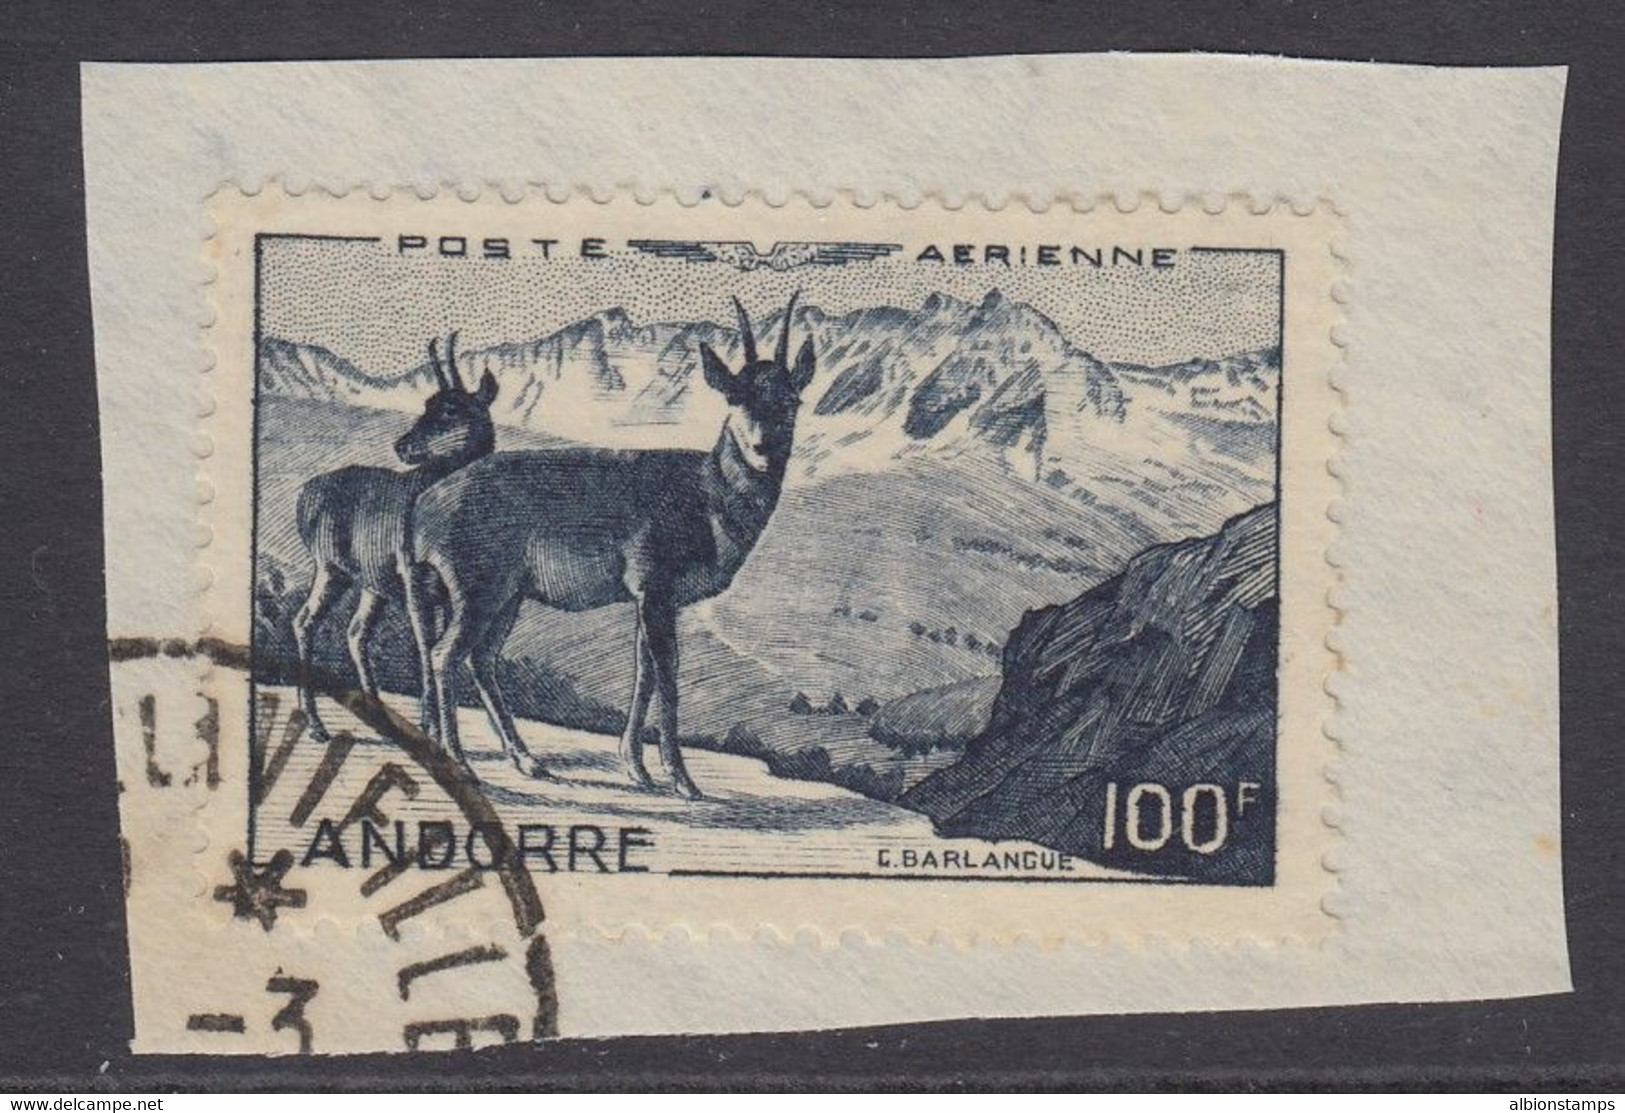 Andorra, Scott C1 (Yvert PA1), Used - Airmail